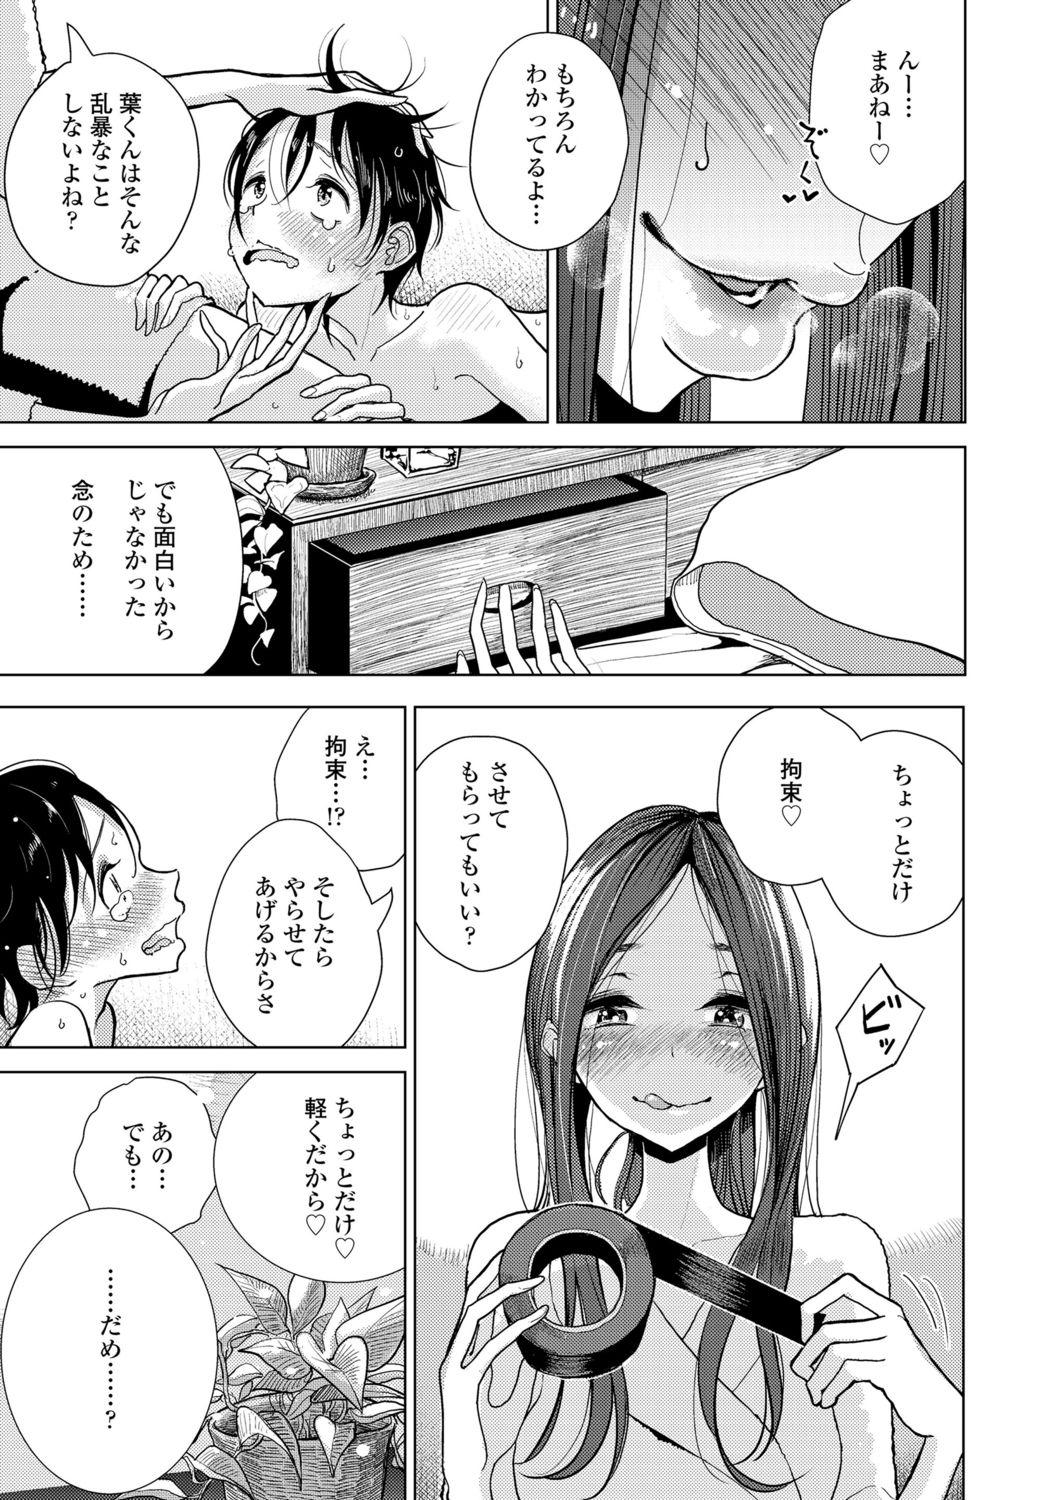 Throatfuck Anata ga Toroke Ochiru made Harcore - Page 9